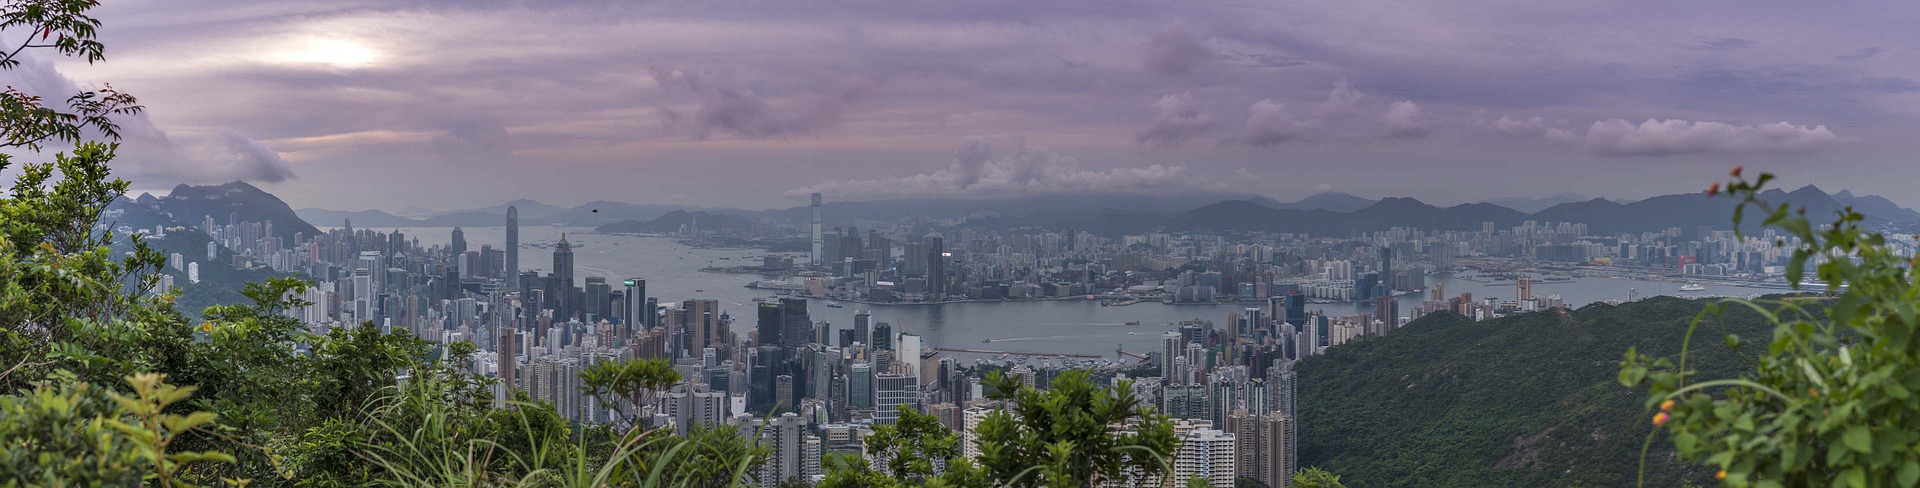 Отельеры Гонконга снижают цены из-за оттока туристов, напуганных протестными акциями